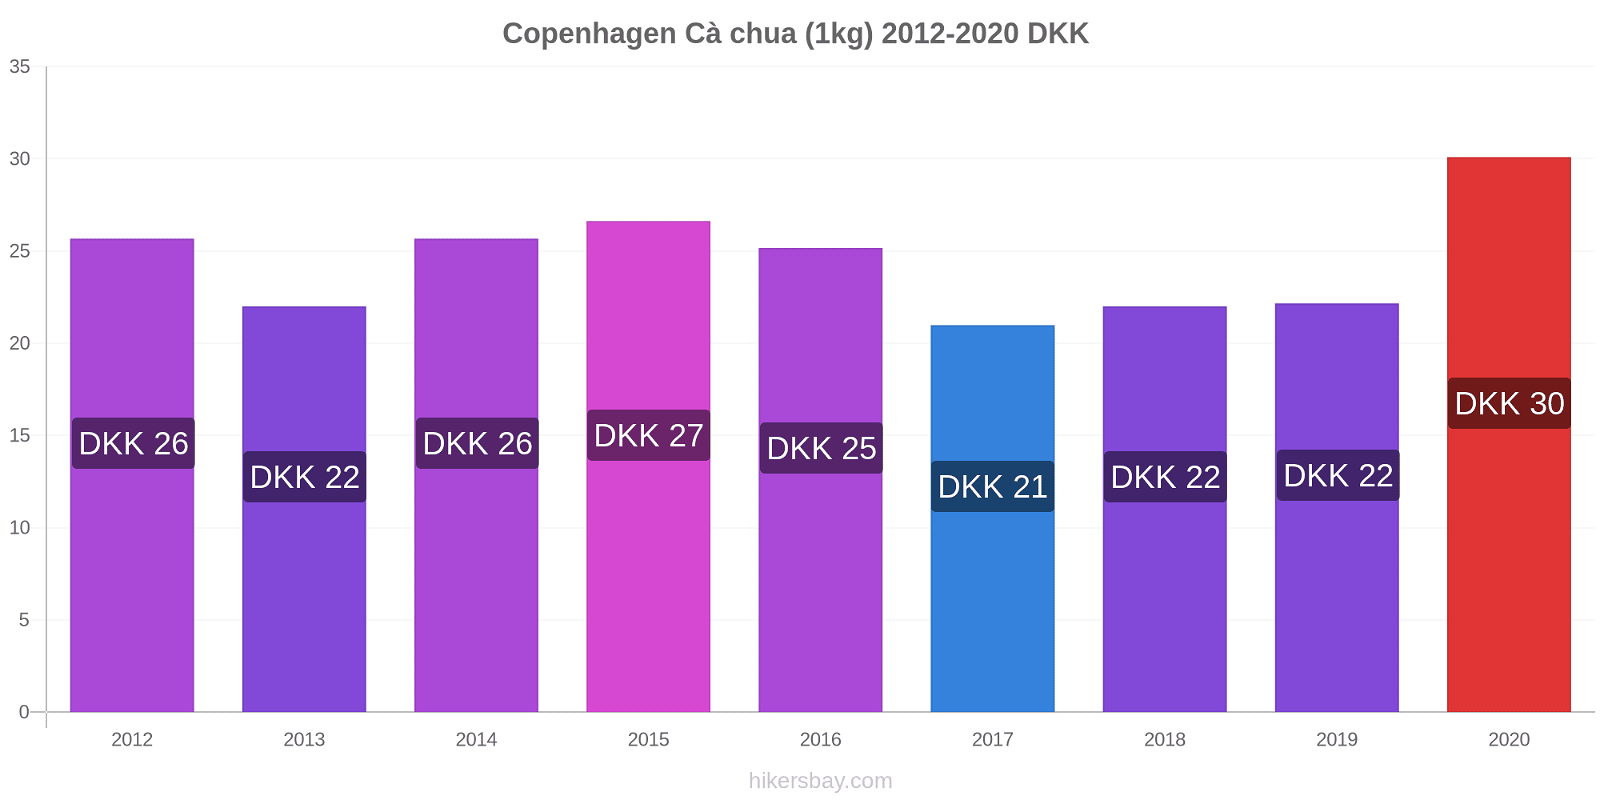 Copenhagen thay đổi giá Cà chua (1kg) hikersbay.com